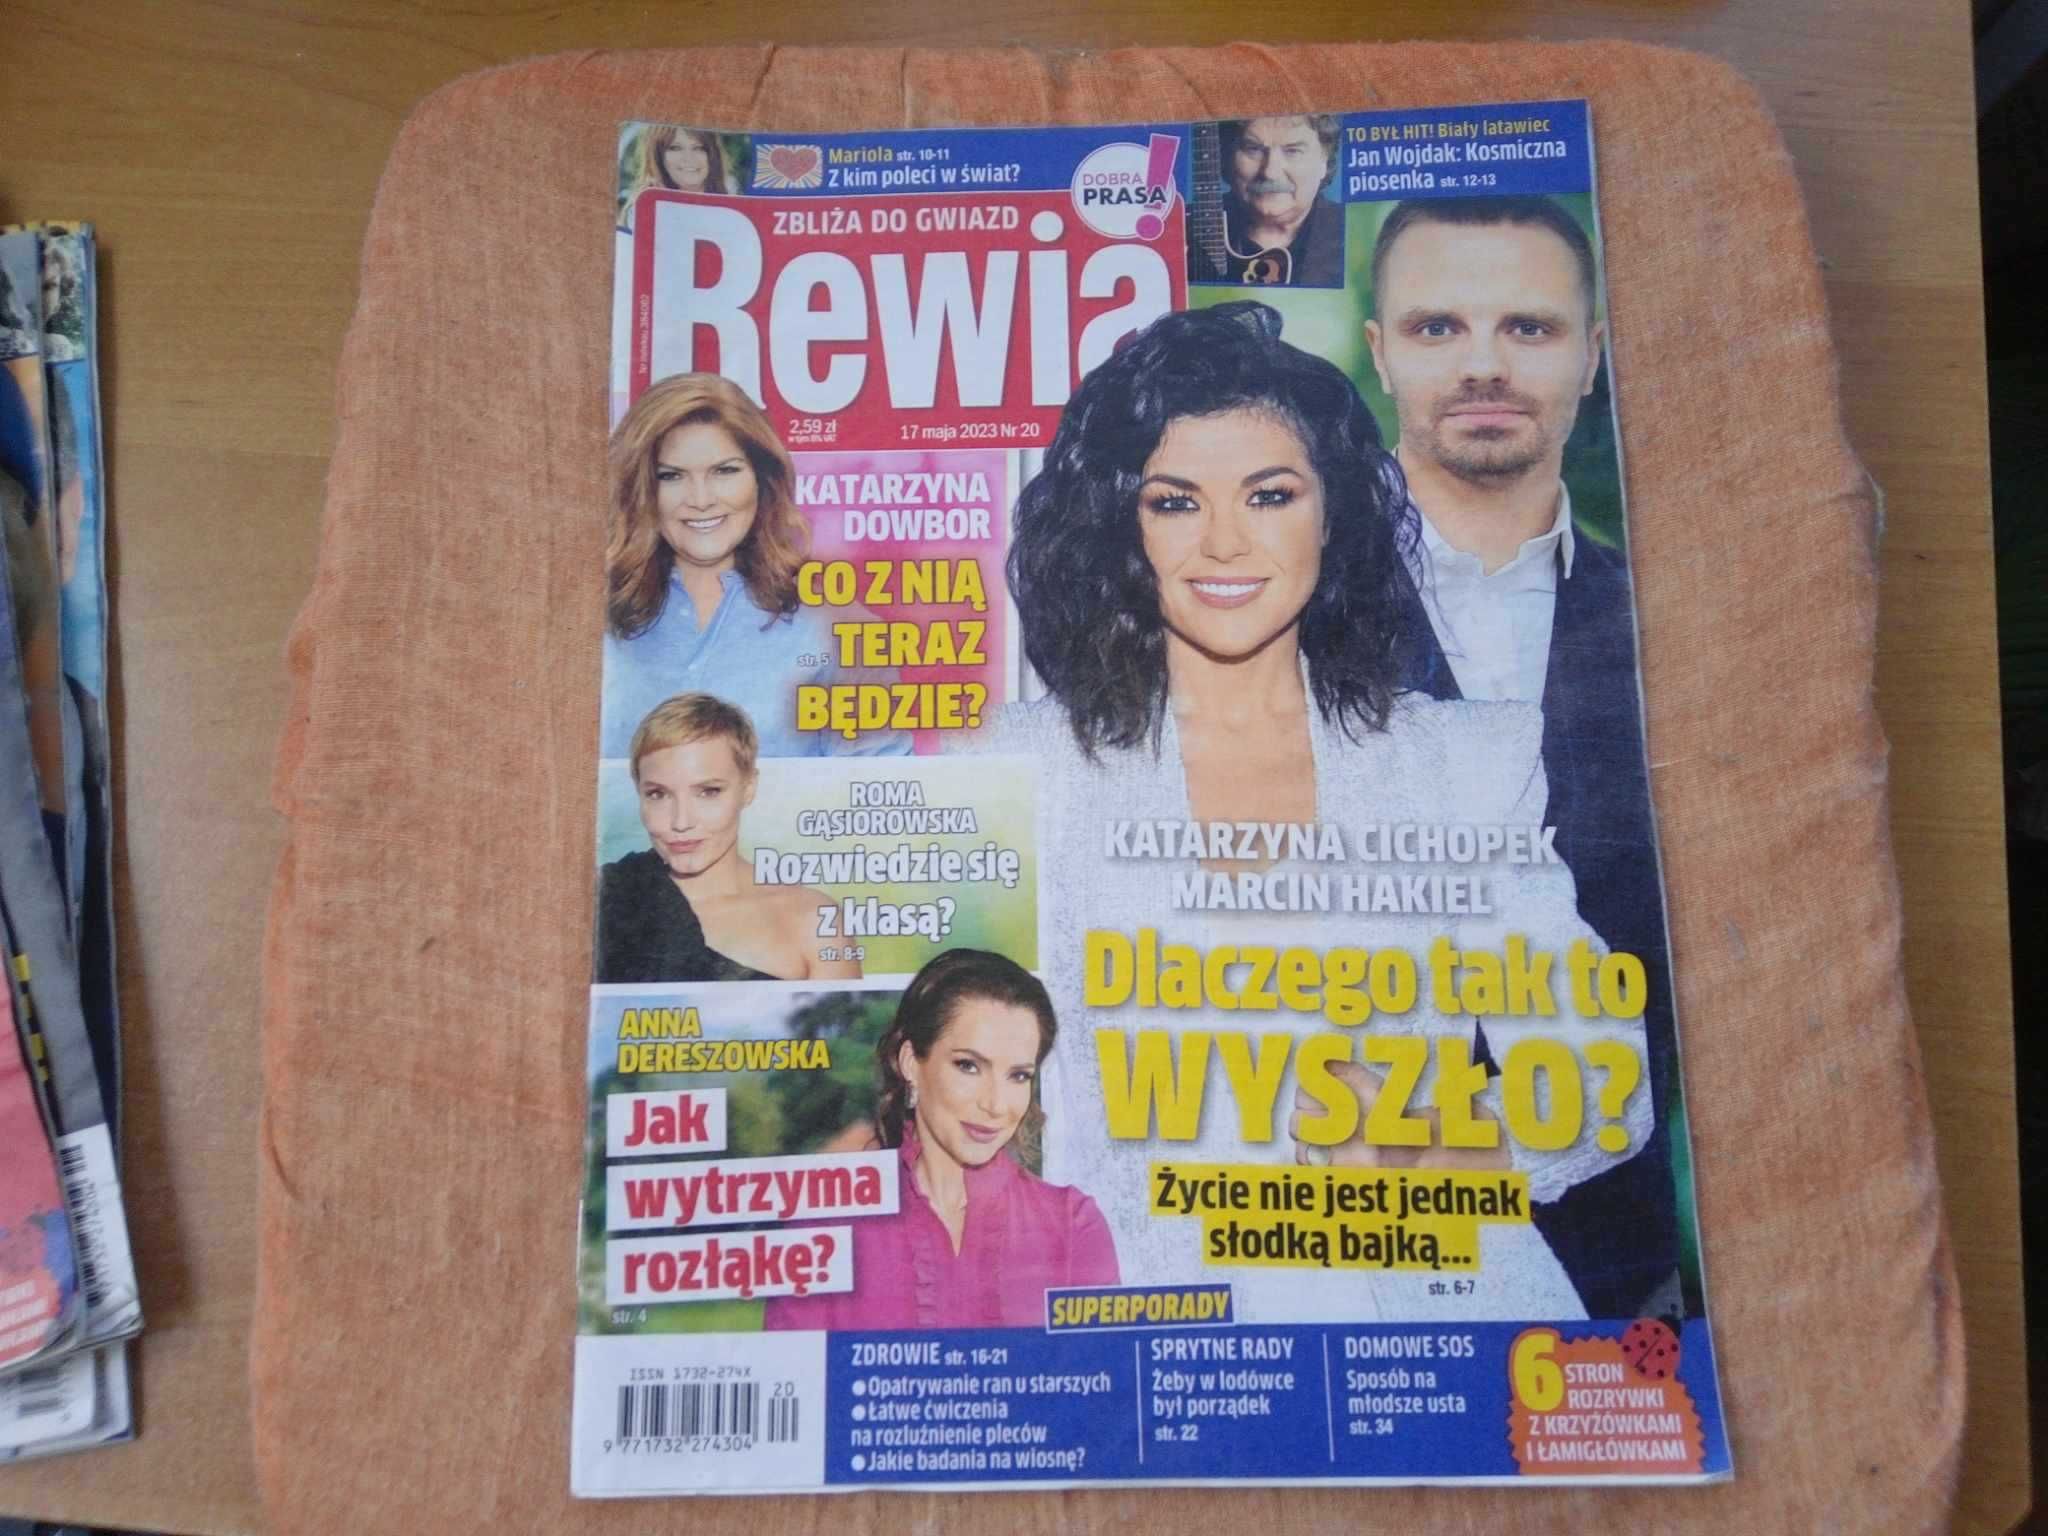 Tygodnik Rewia zbliża do gwiazd nr 20 maj 2023 gazeta